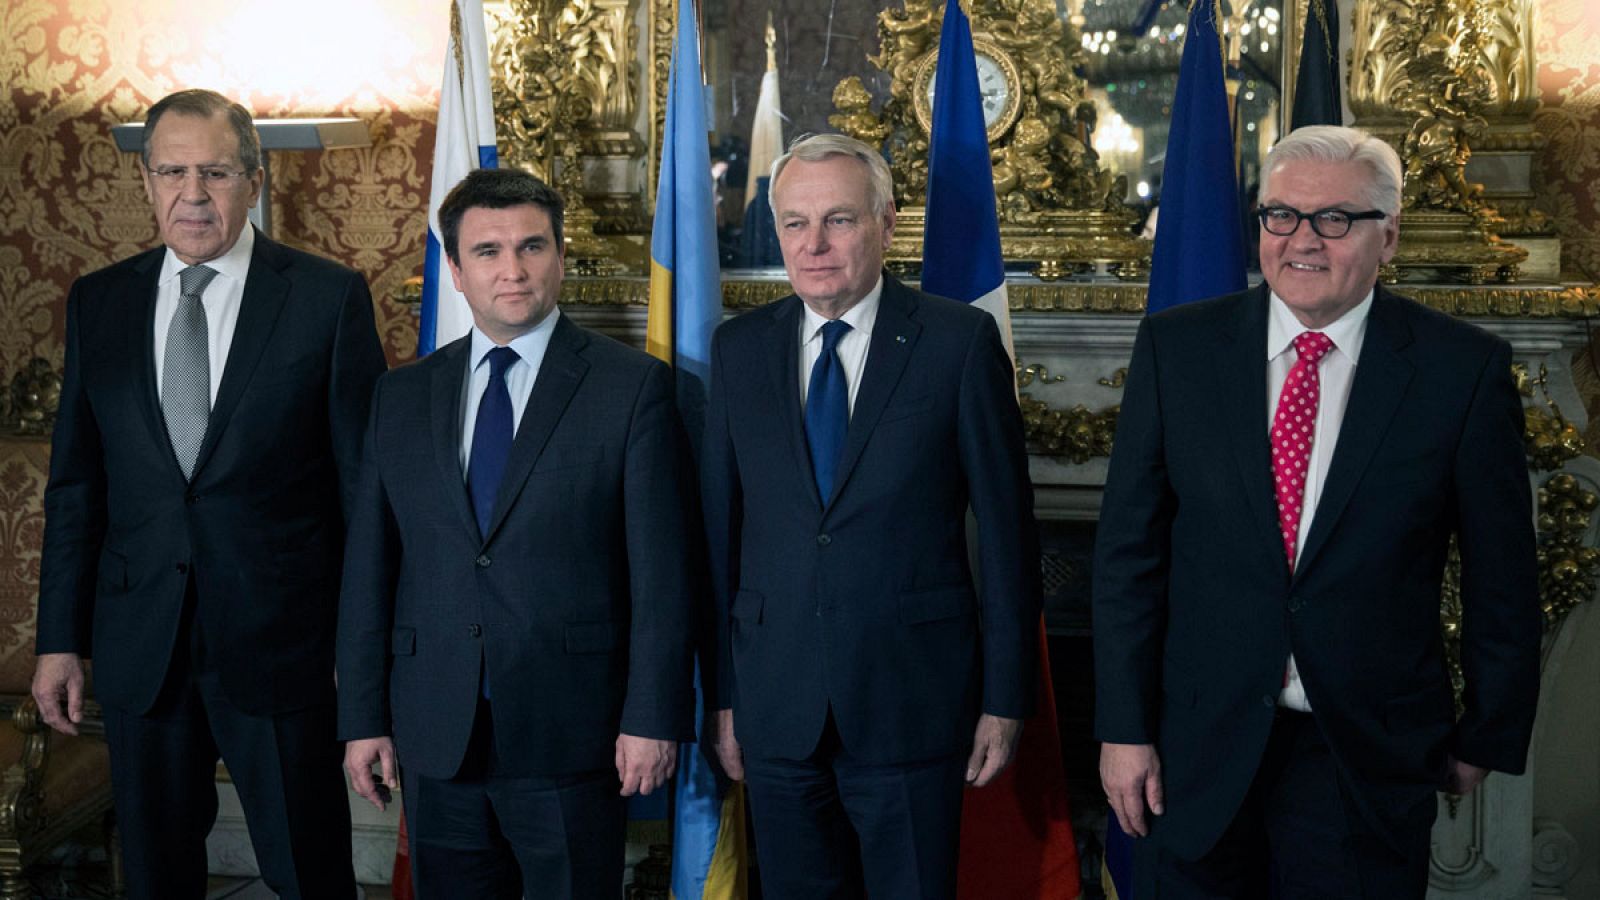 El denominado "Cuarteto de Normandía" antes de su reunión en París para llegar a una solución del conflicto ucraniano.